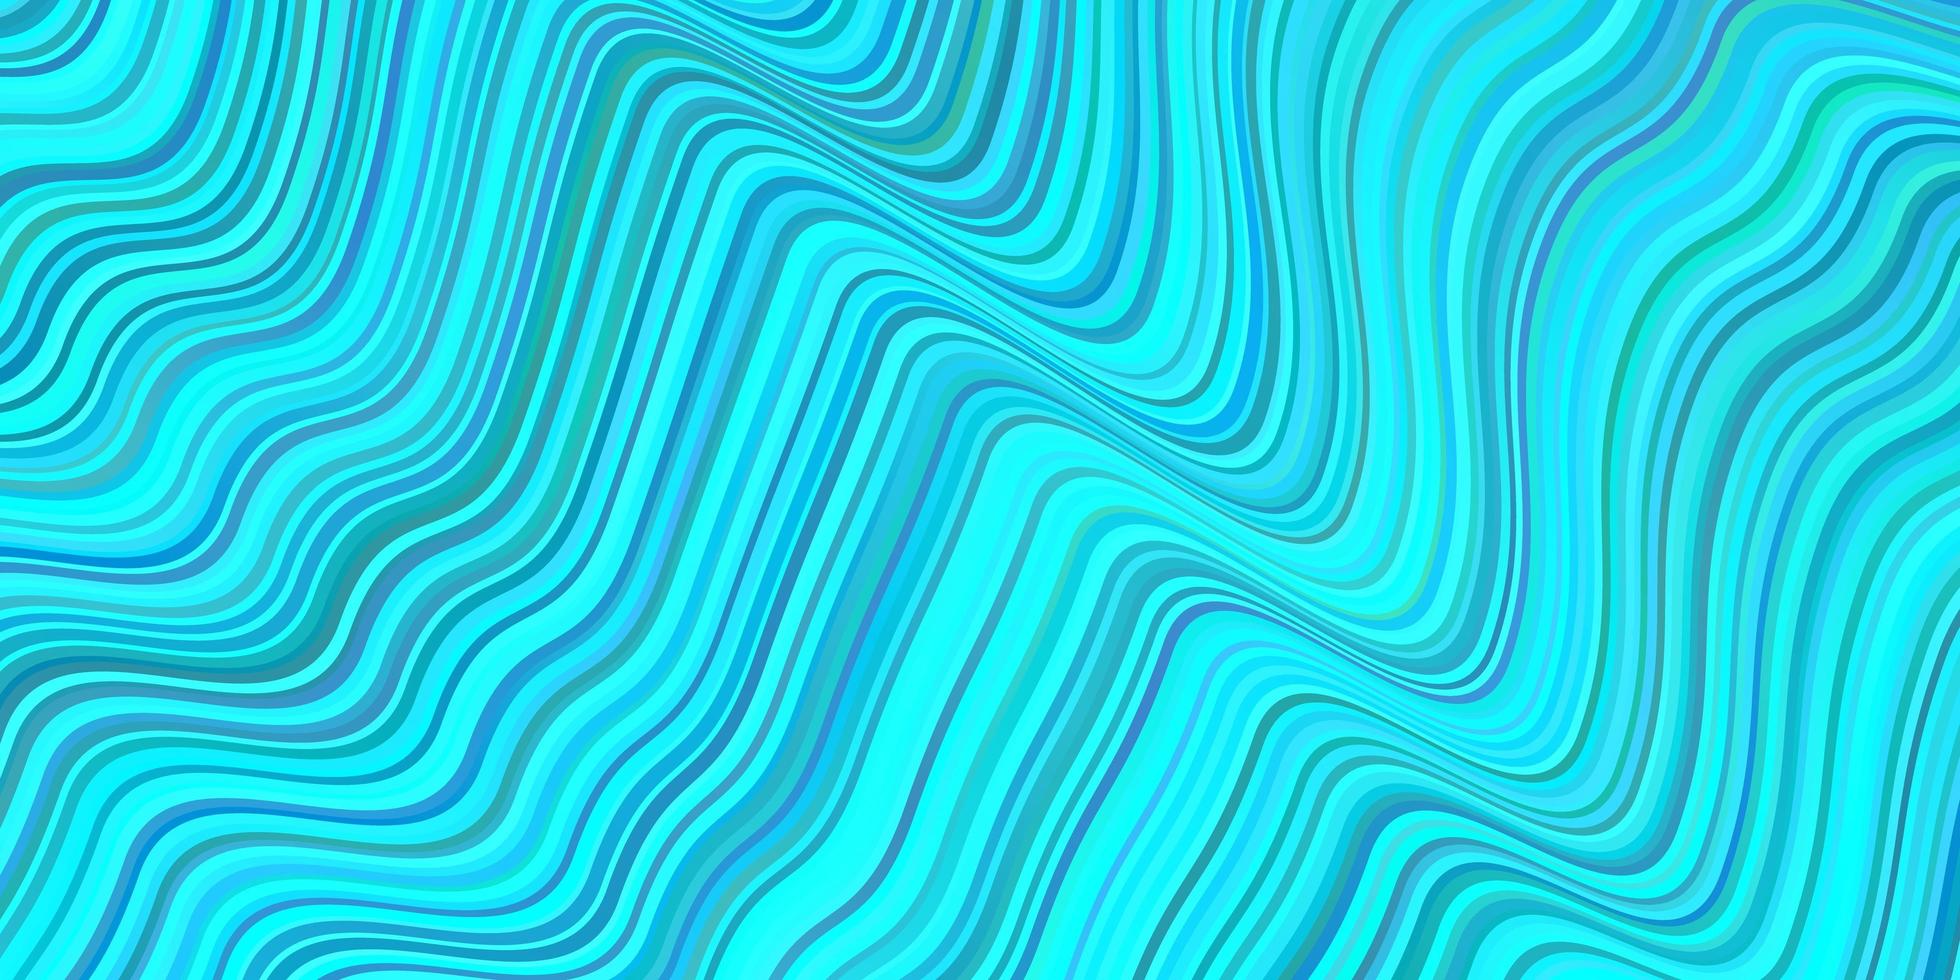 fundo vector azul claro com linhas.